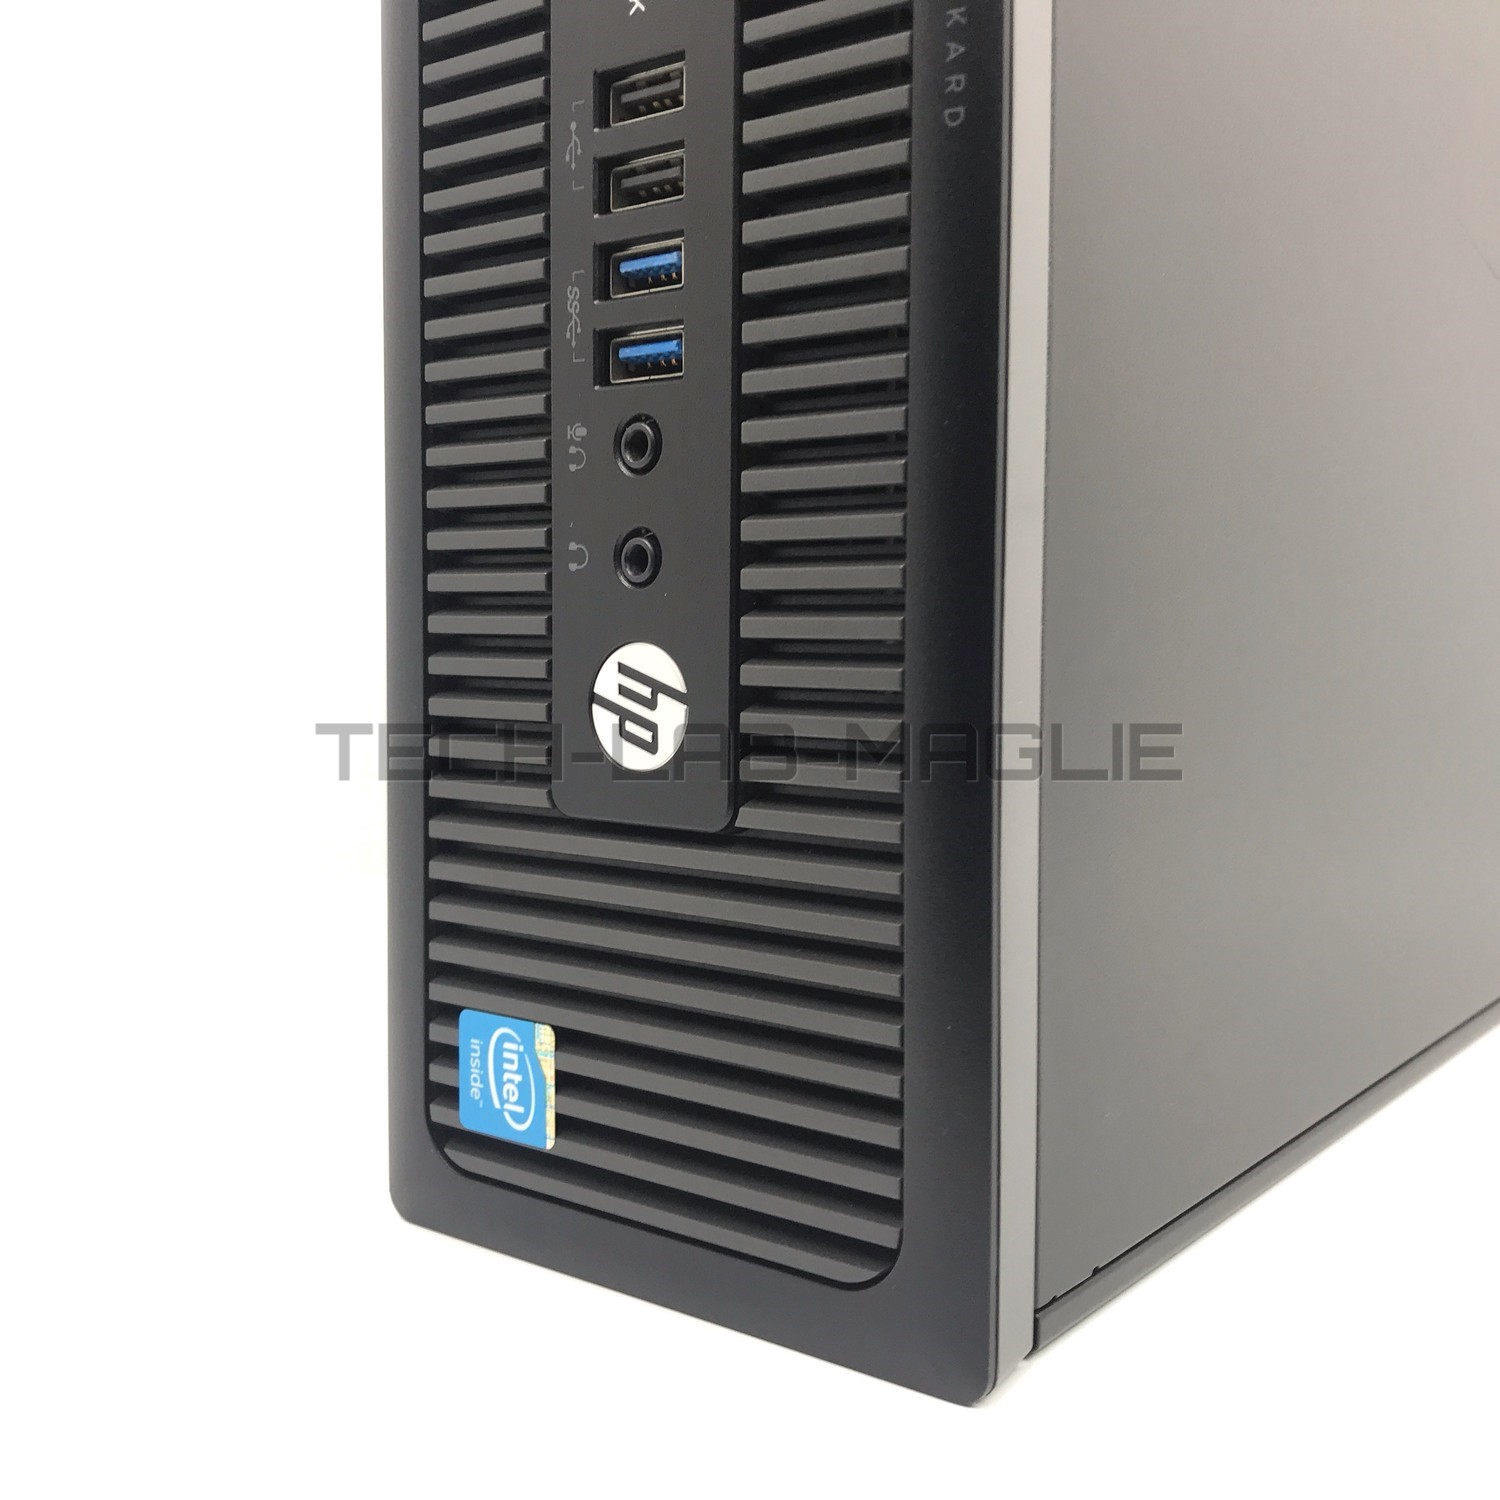 COMPUTER RICONDIZIONATO HP PRODESK 600 G1840 2,8GHZ 4GB RAM 128GB SSD WIN 10